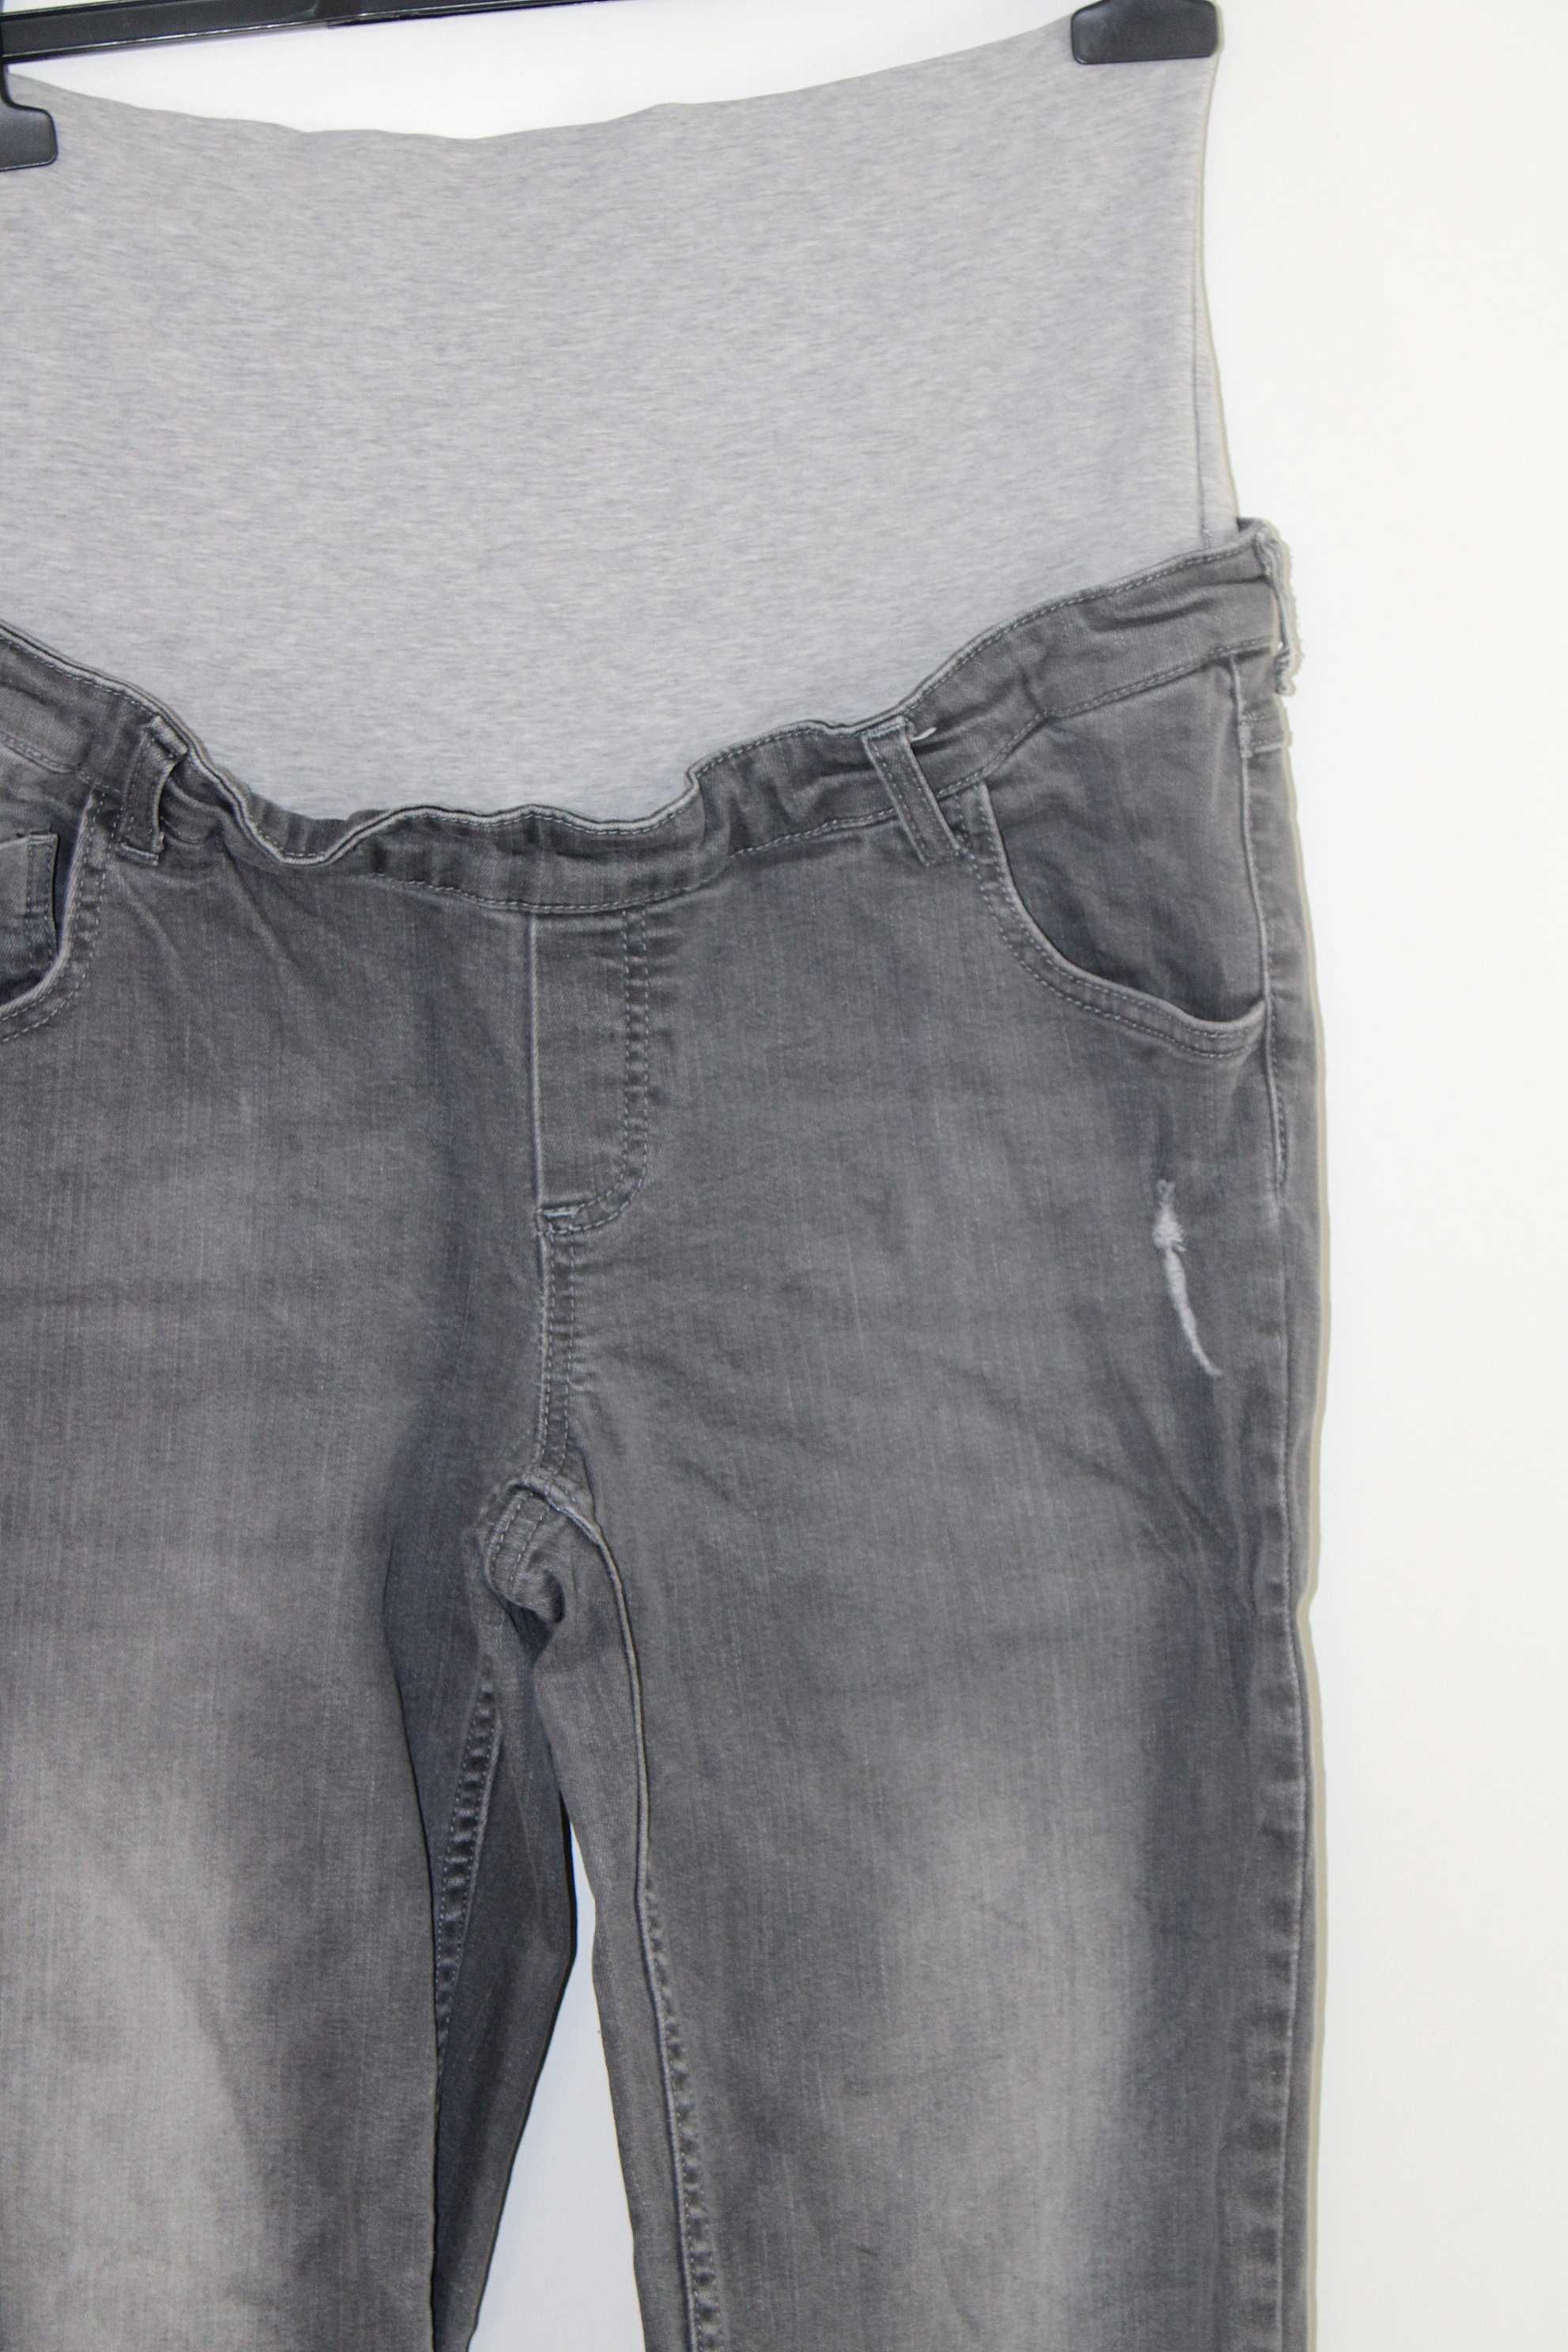 x5 BELLY BUTTON Wygodne Szare Proste Spodnie Ciążowe Jeans 40 L